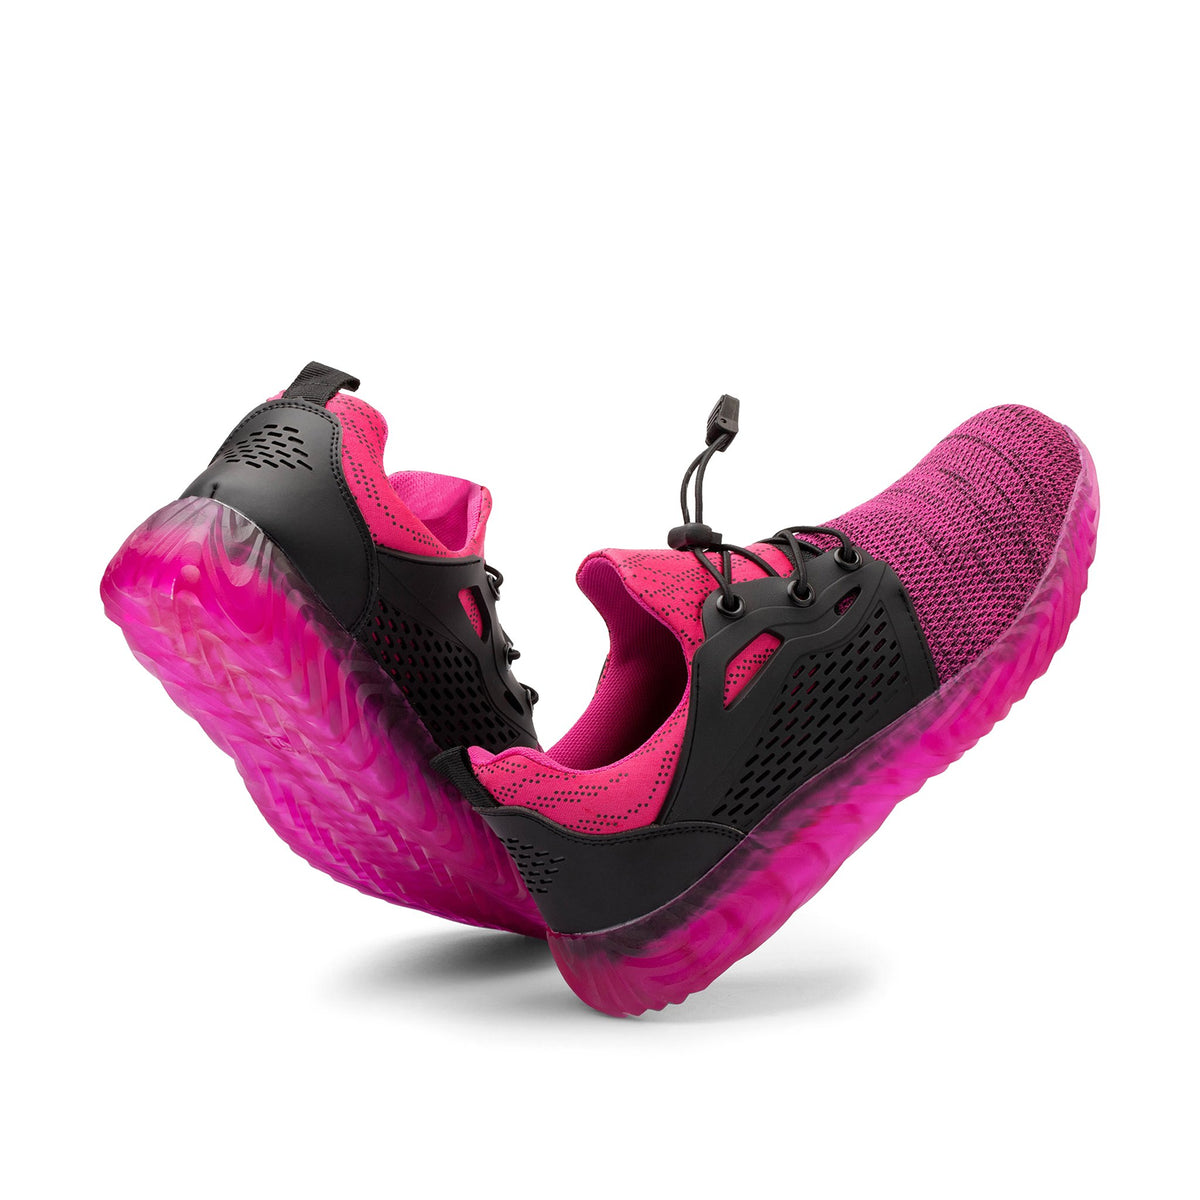 Ryder 1.5 Pink - Indestructible Shoes